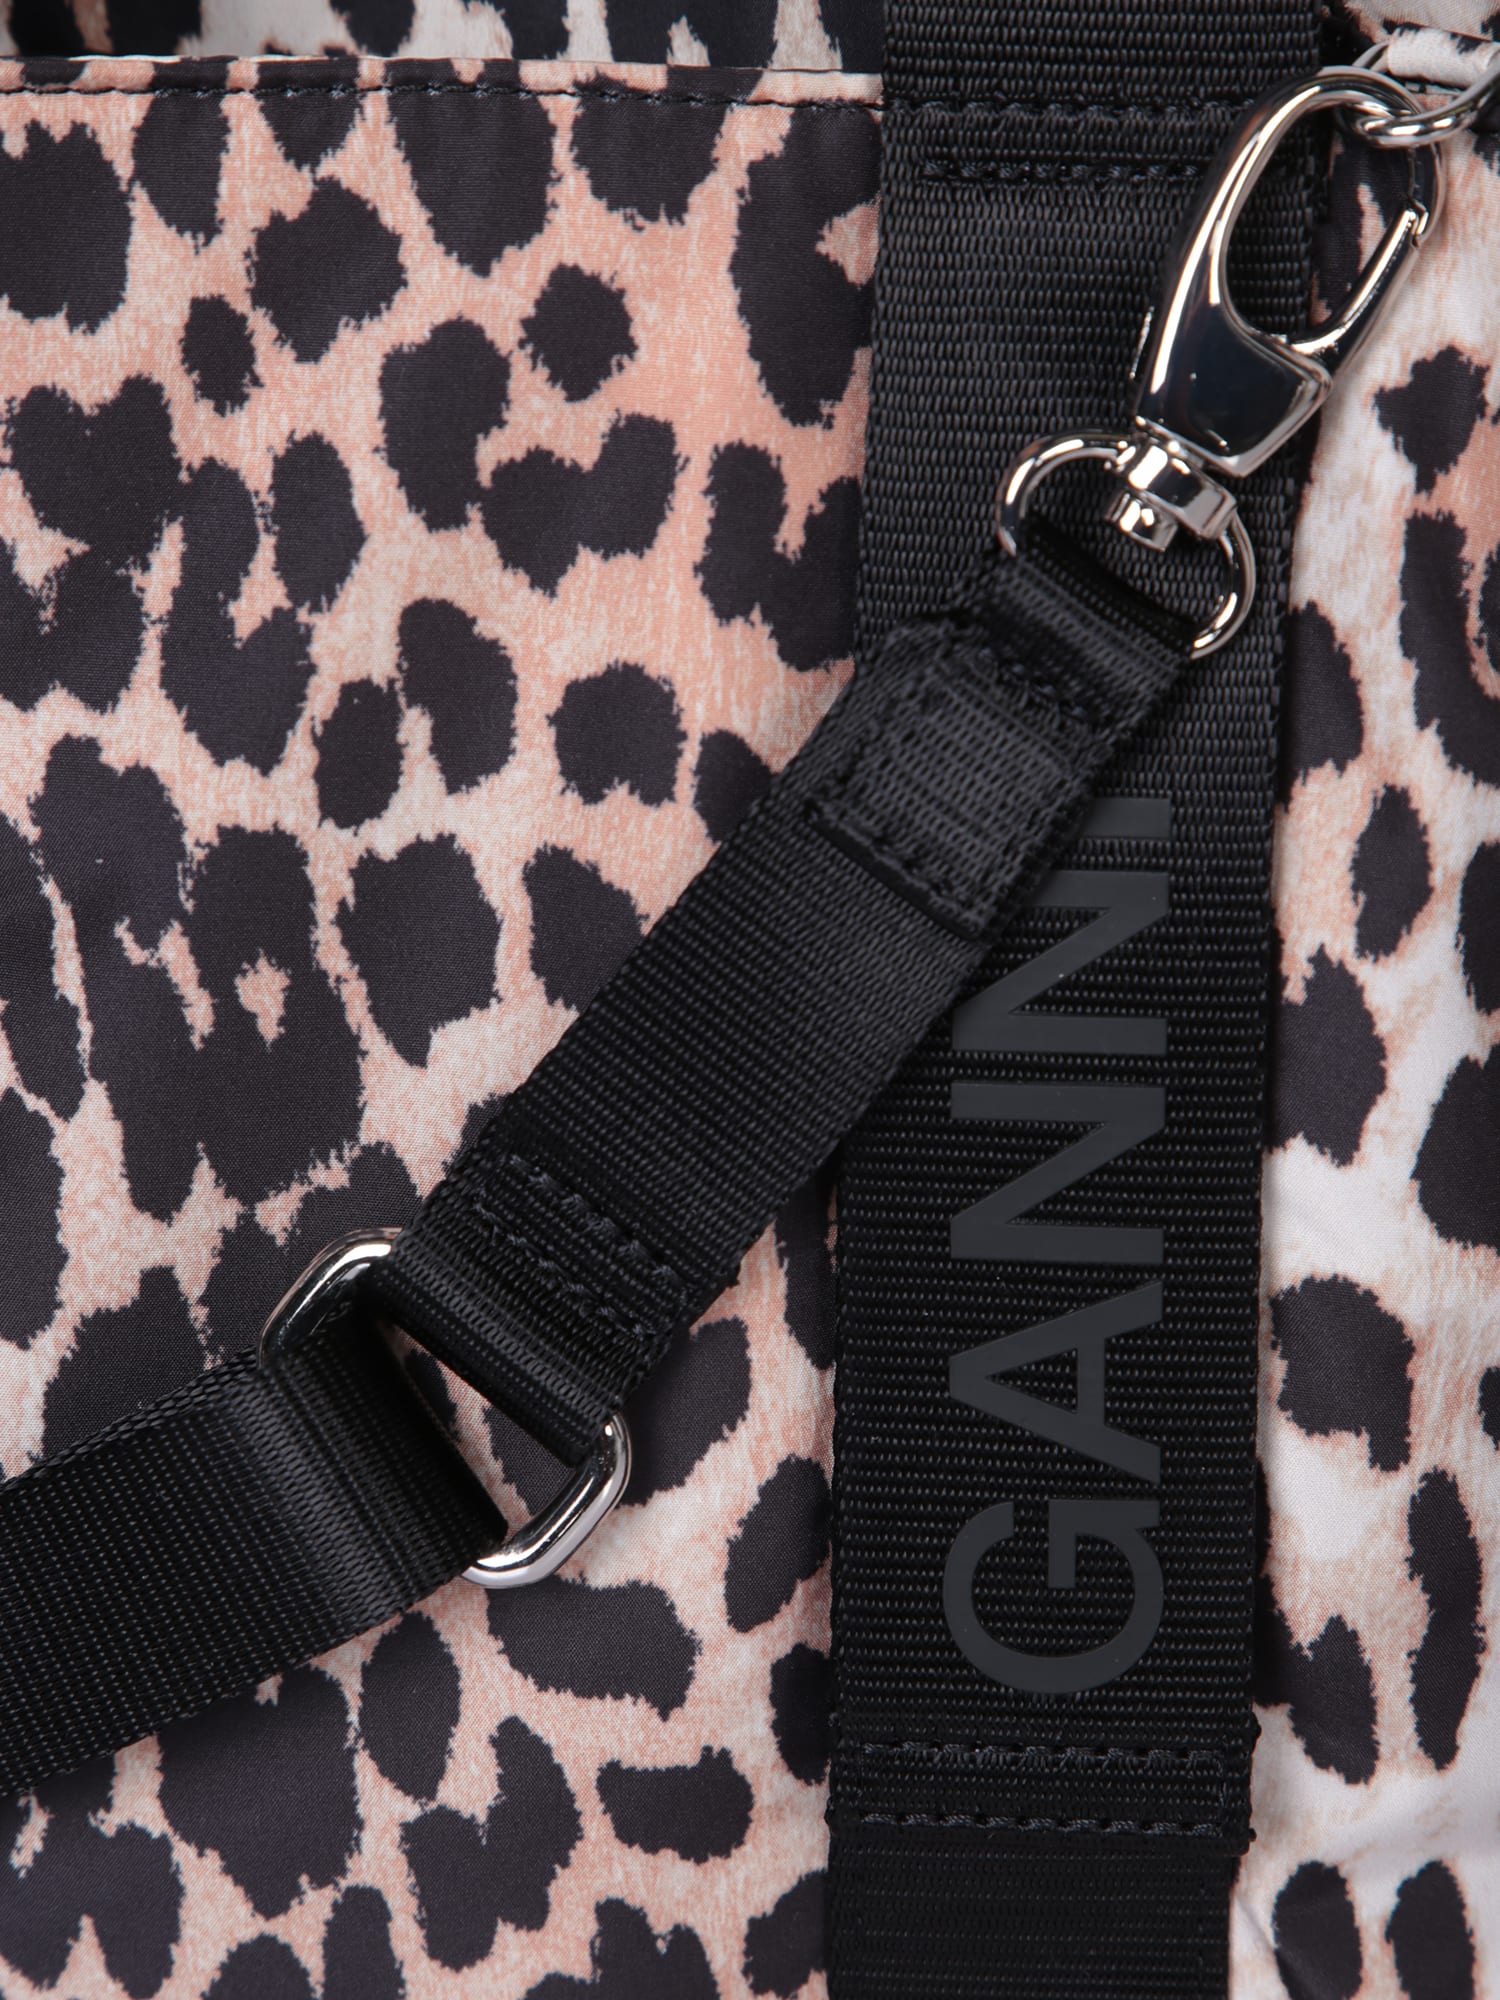 Shop Ganni Leopard Small Tote Bag In Multi